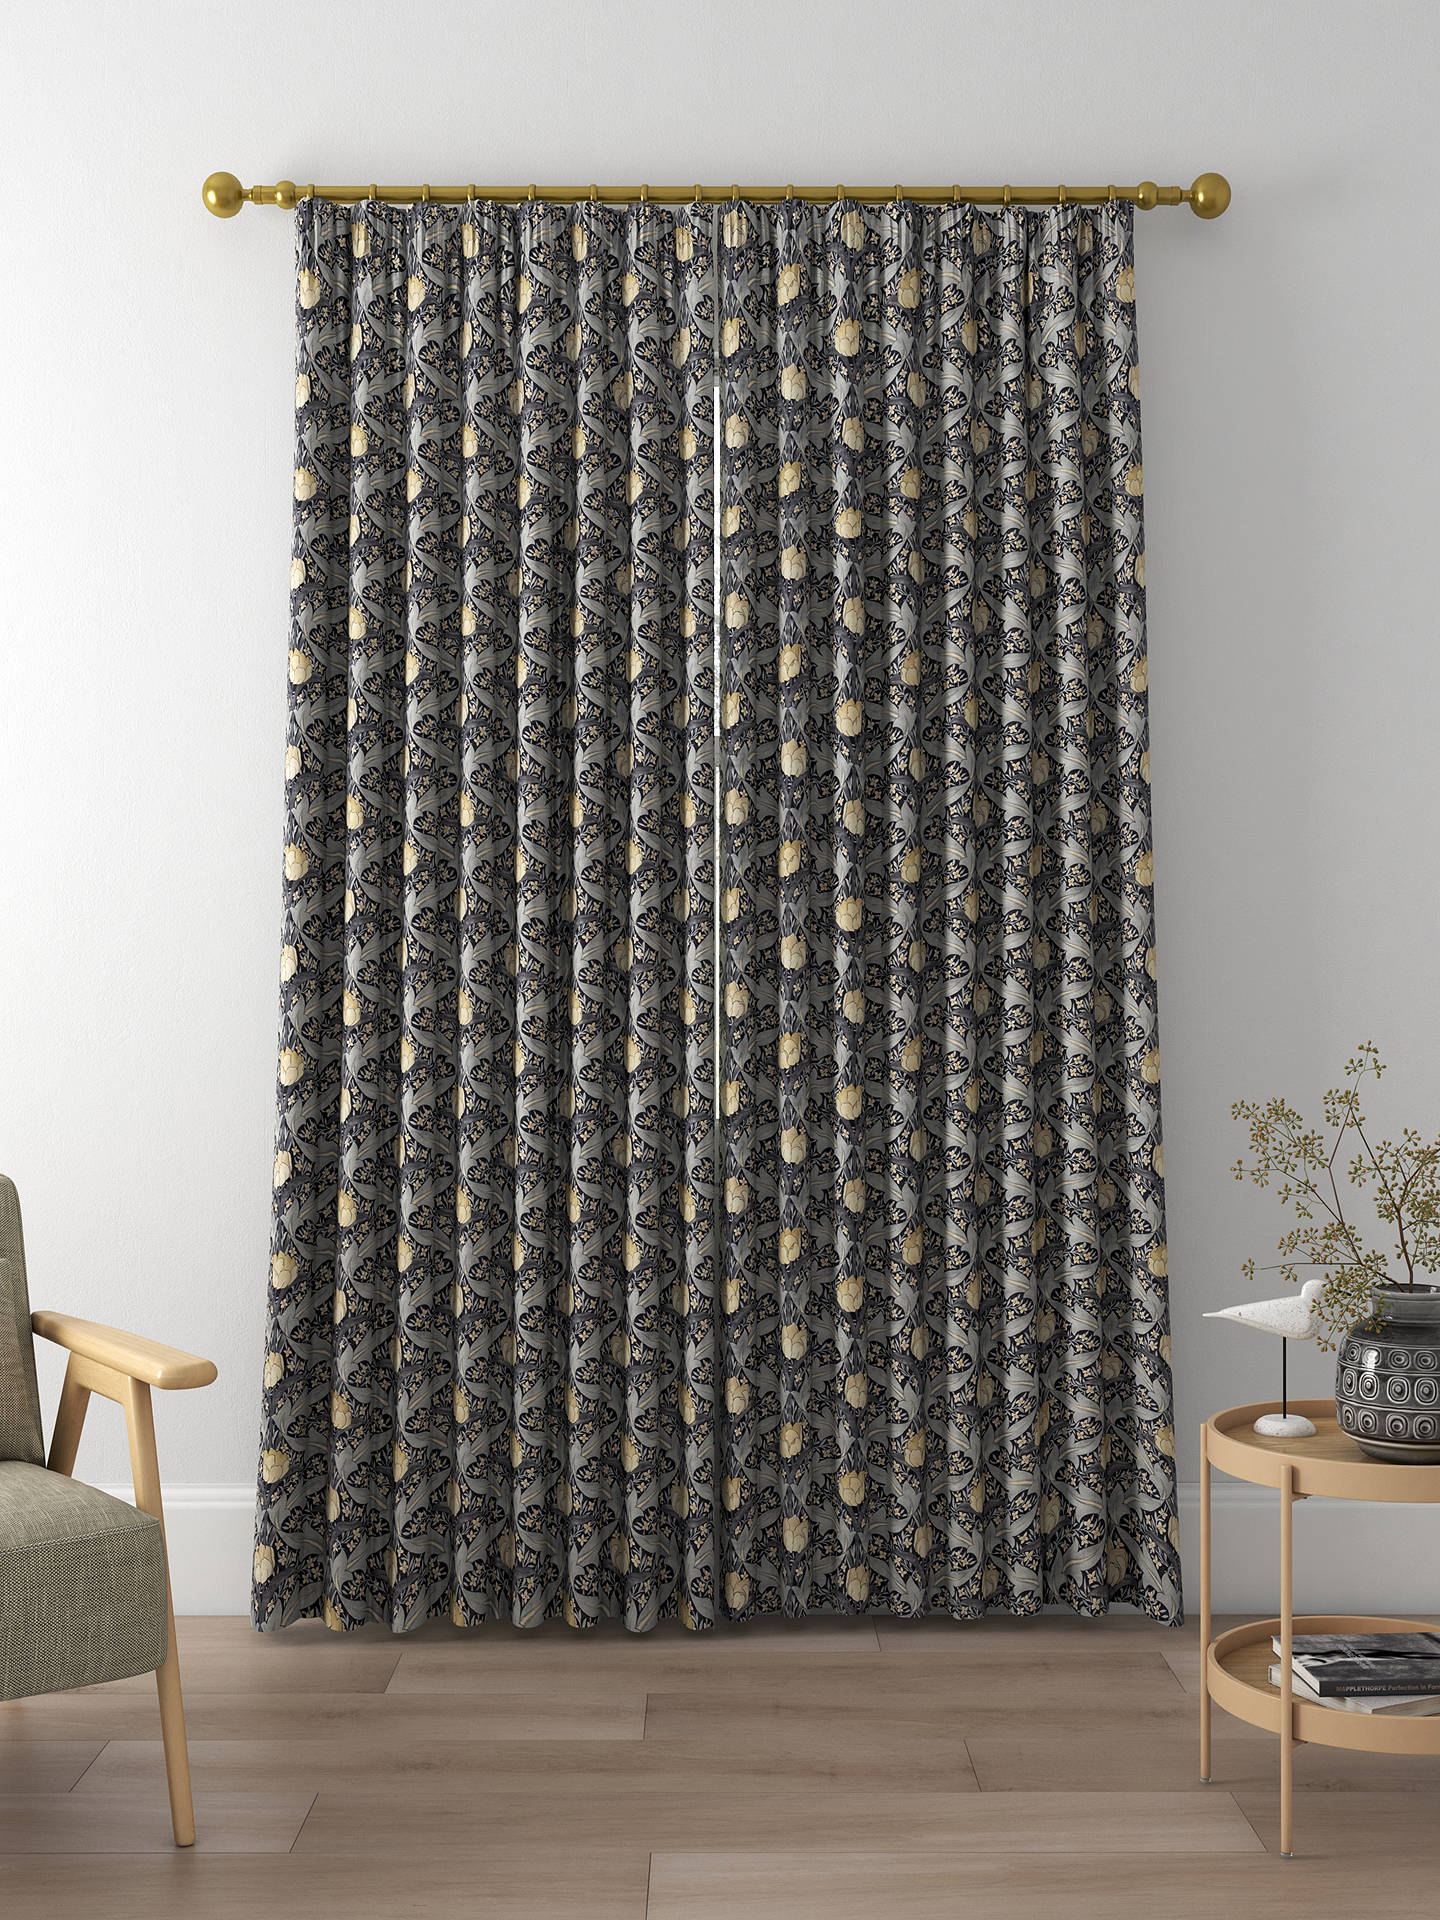 GP & J Baker Tulip & Jasmine Made to Measure Curtains, Indigo/Ivory